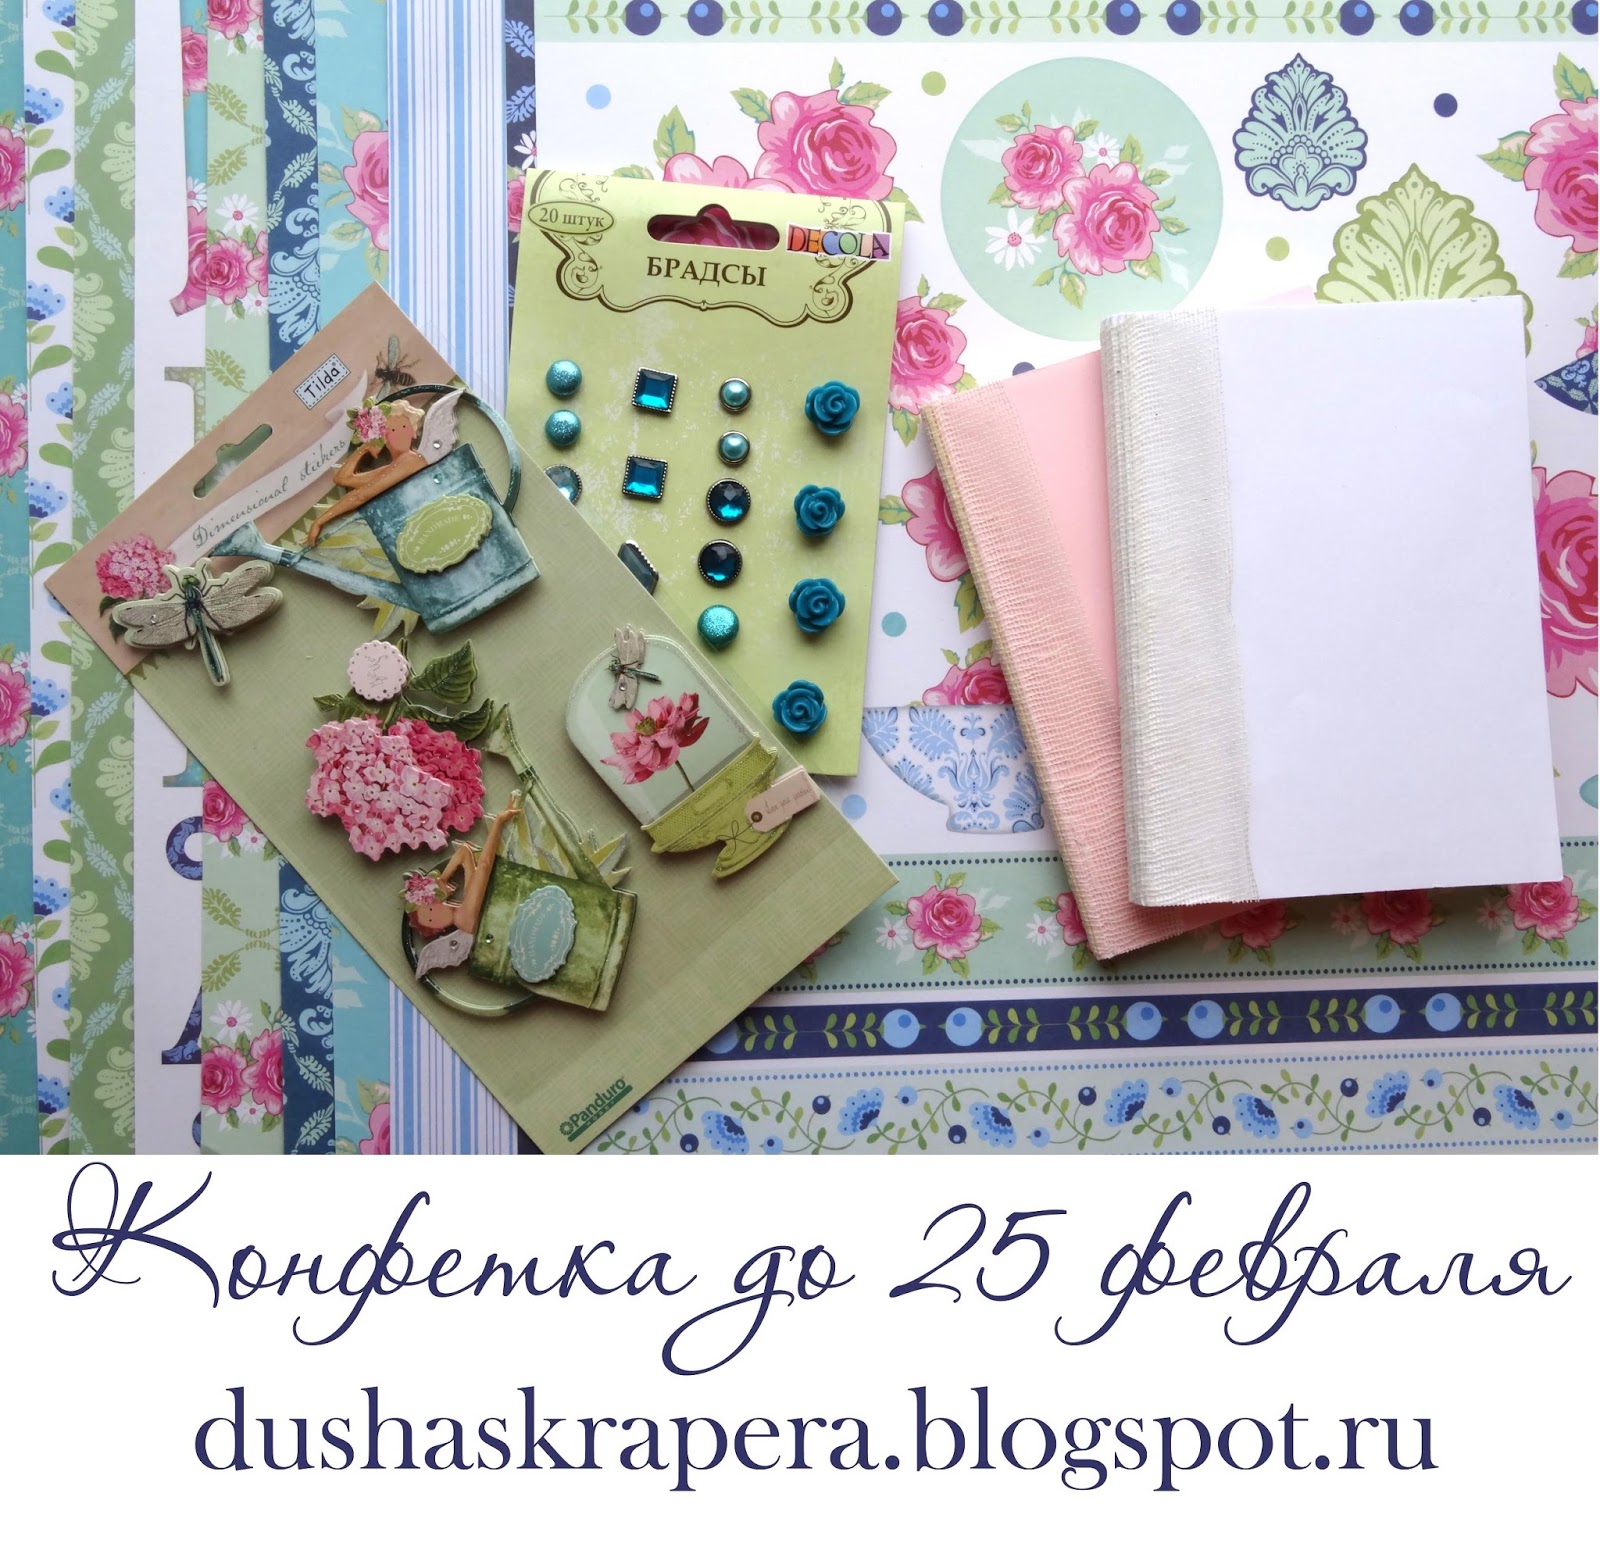 http://dushaskrapera.blogspot.ru/2015/02/blog-post.html